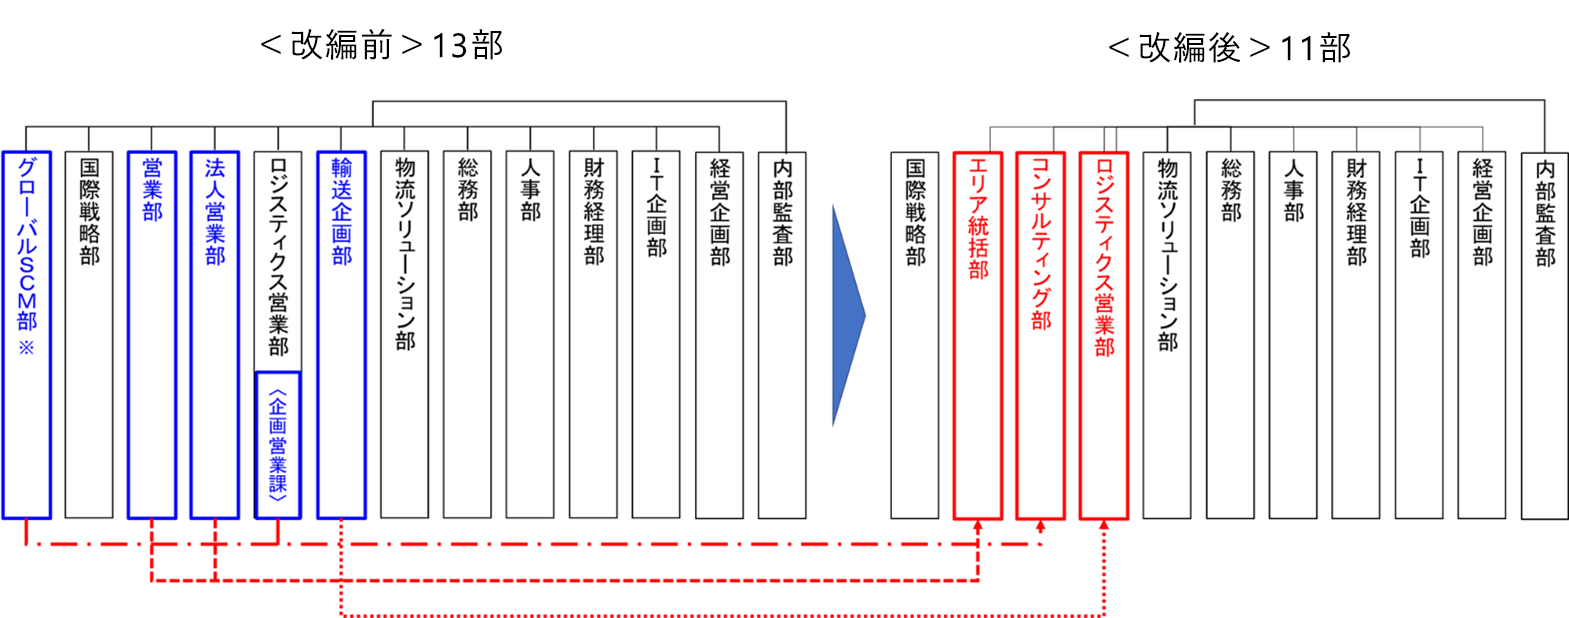 佐川グローバルロジスティクス組織改編のイメージ